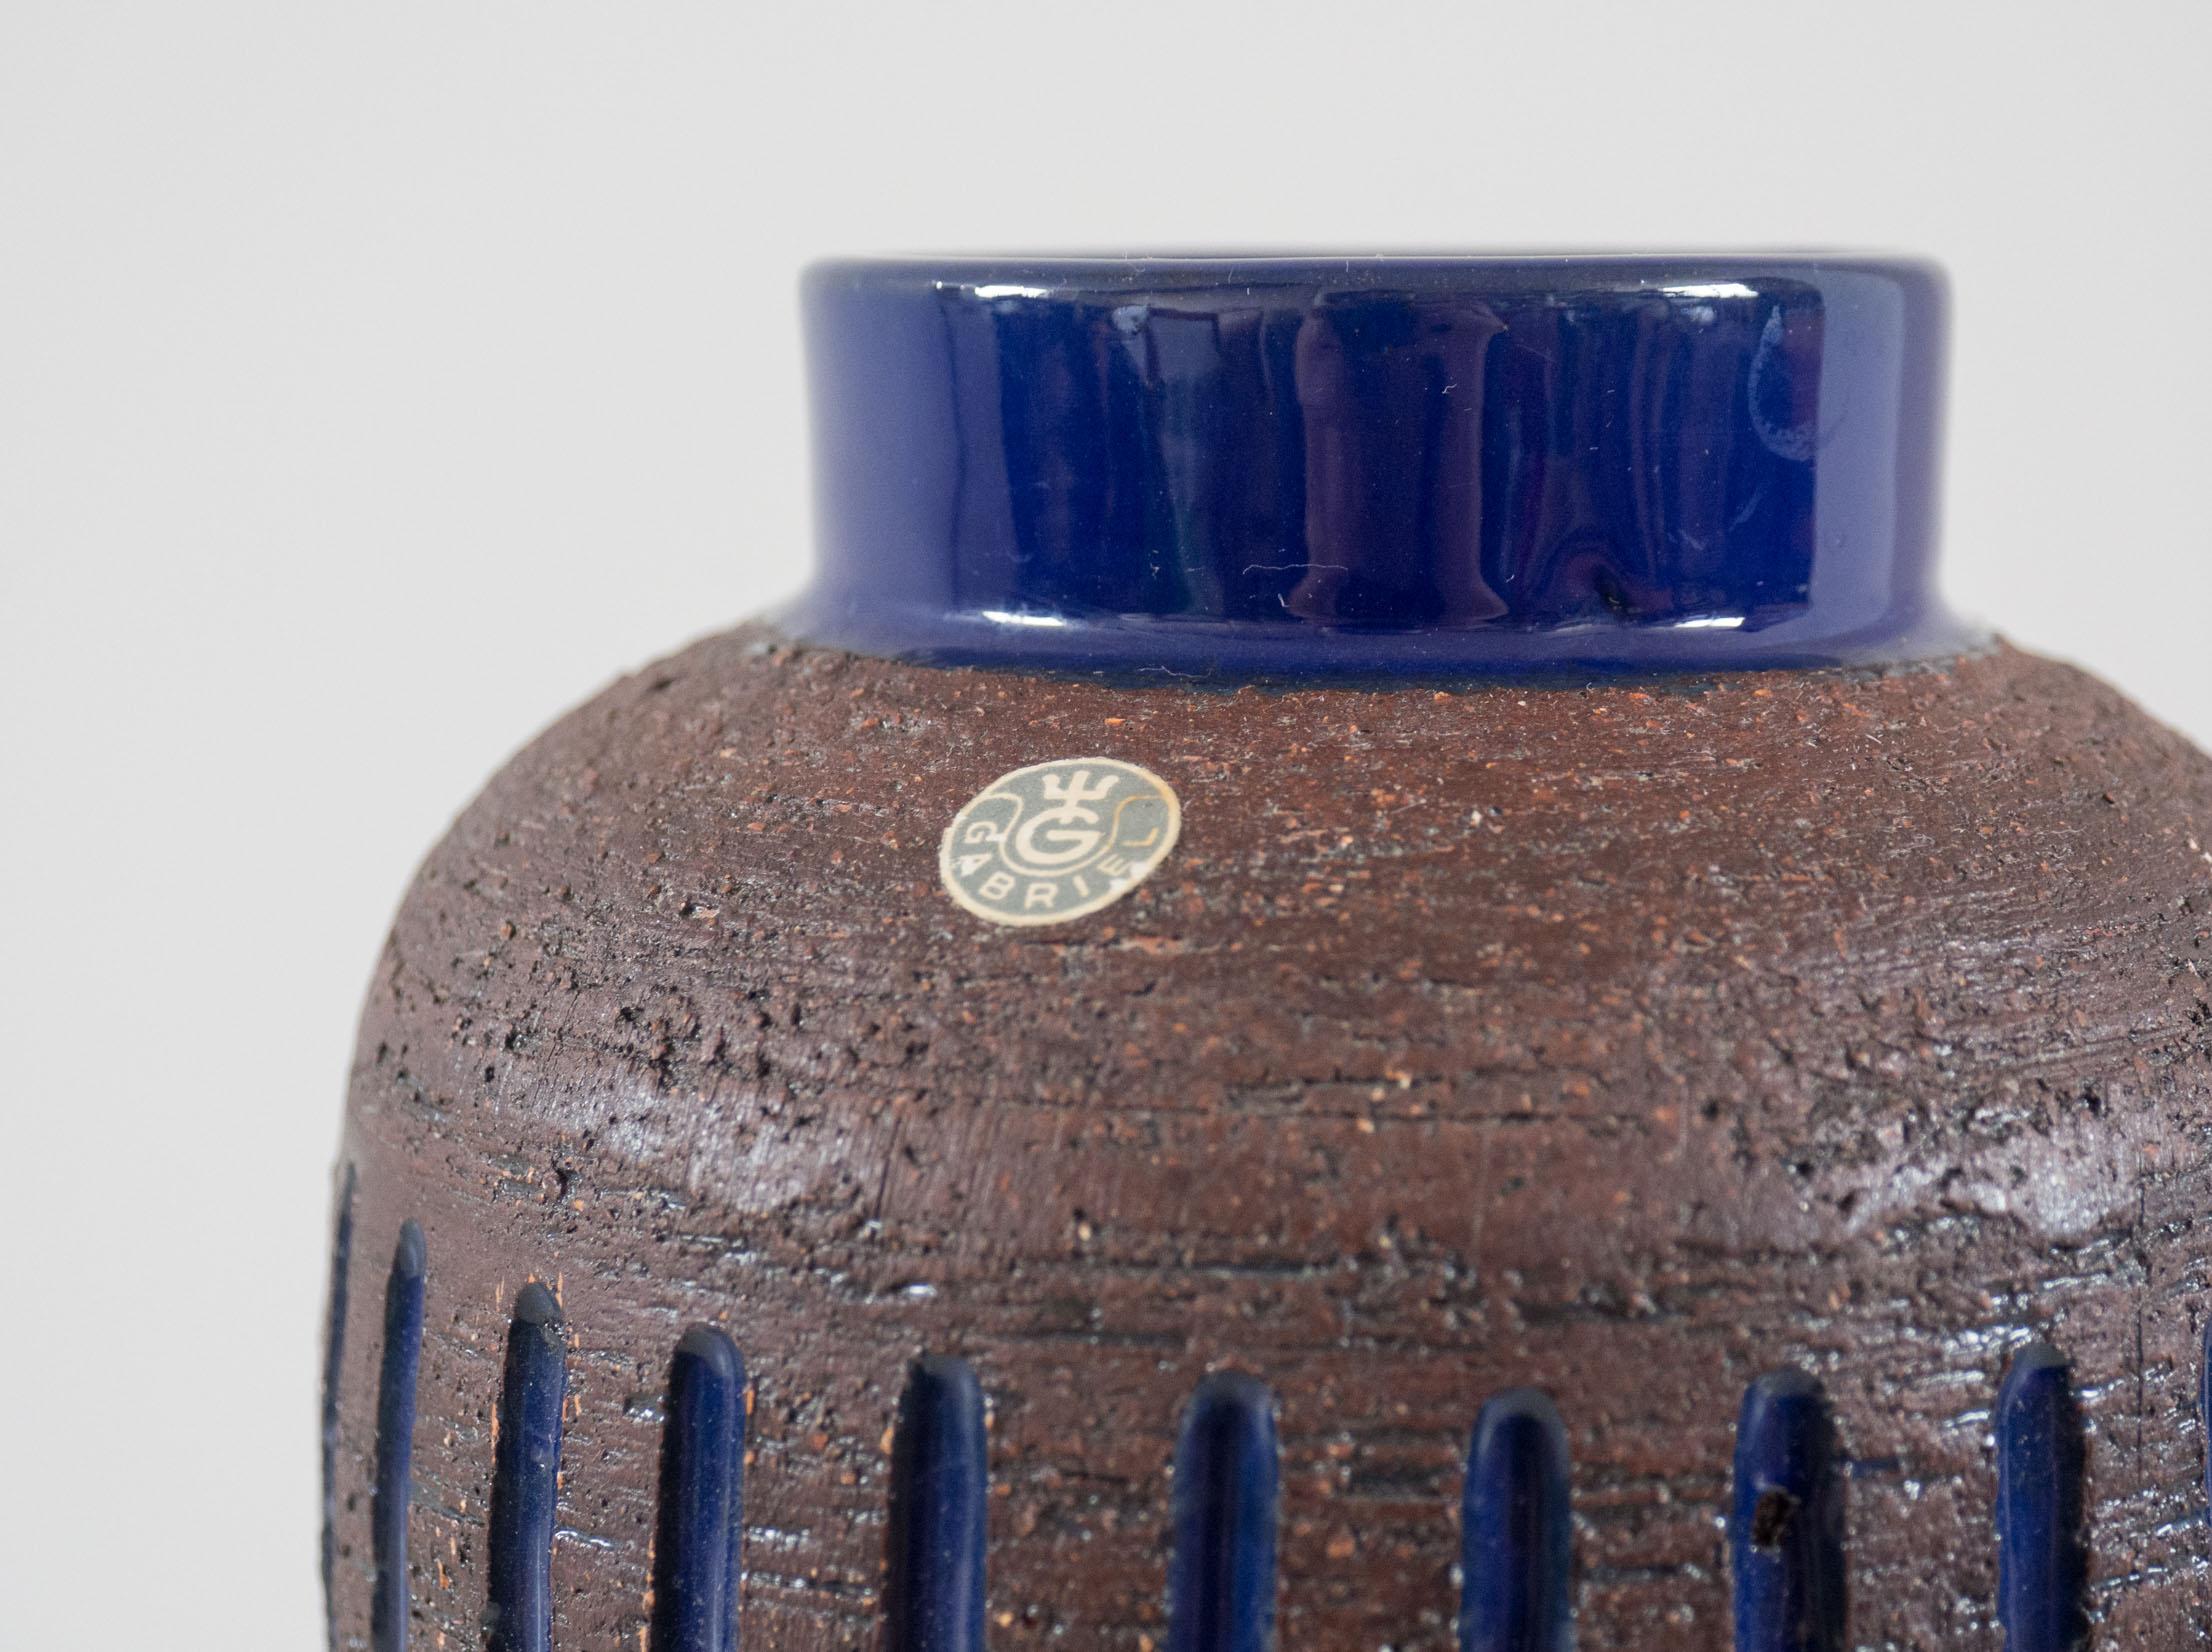 Vase en céramique de Suède fabriqué par Gabriel pottery.

Le vase est recouvert d'un émail bleu cobalt brillant avec une finition texturée brune. Il fait partie d'une série de poteries dans ce schéma de couleurs et de textures spécifique, ce vase